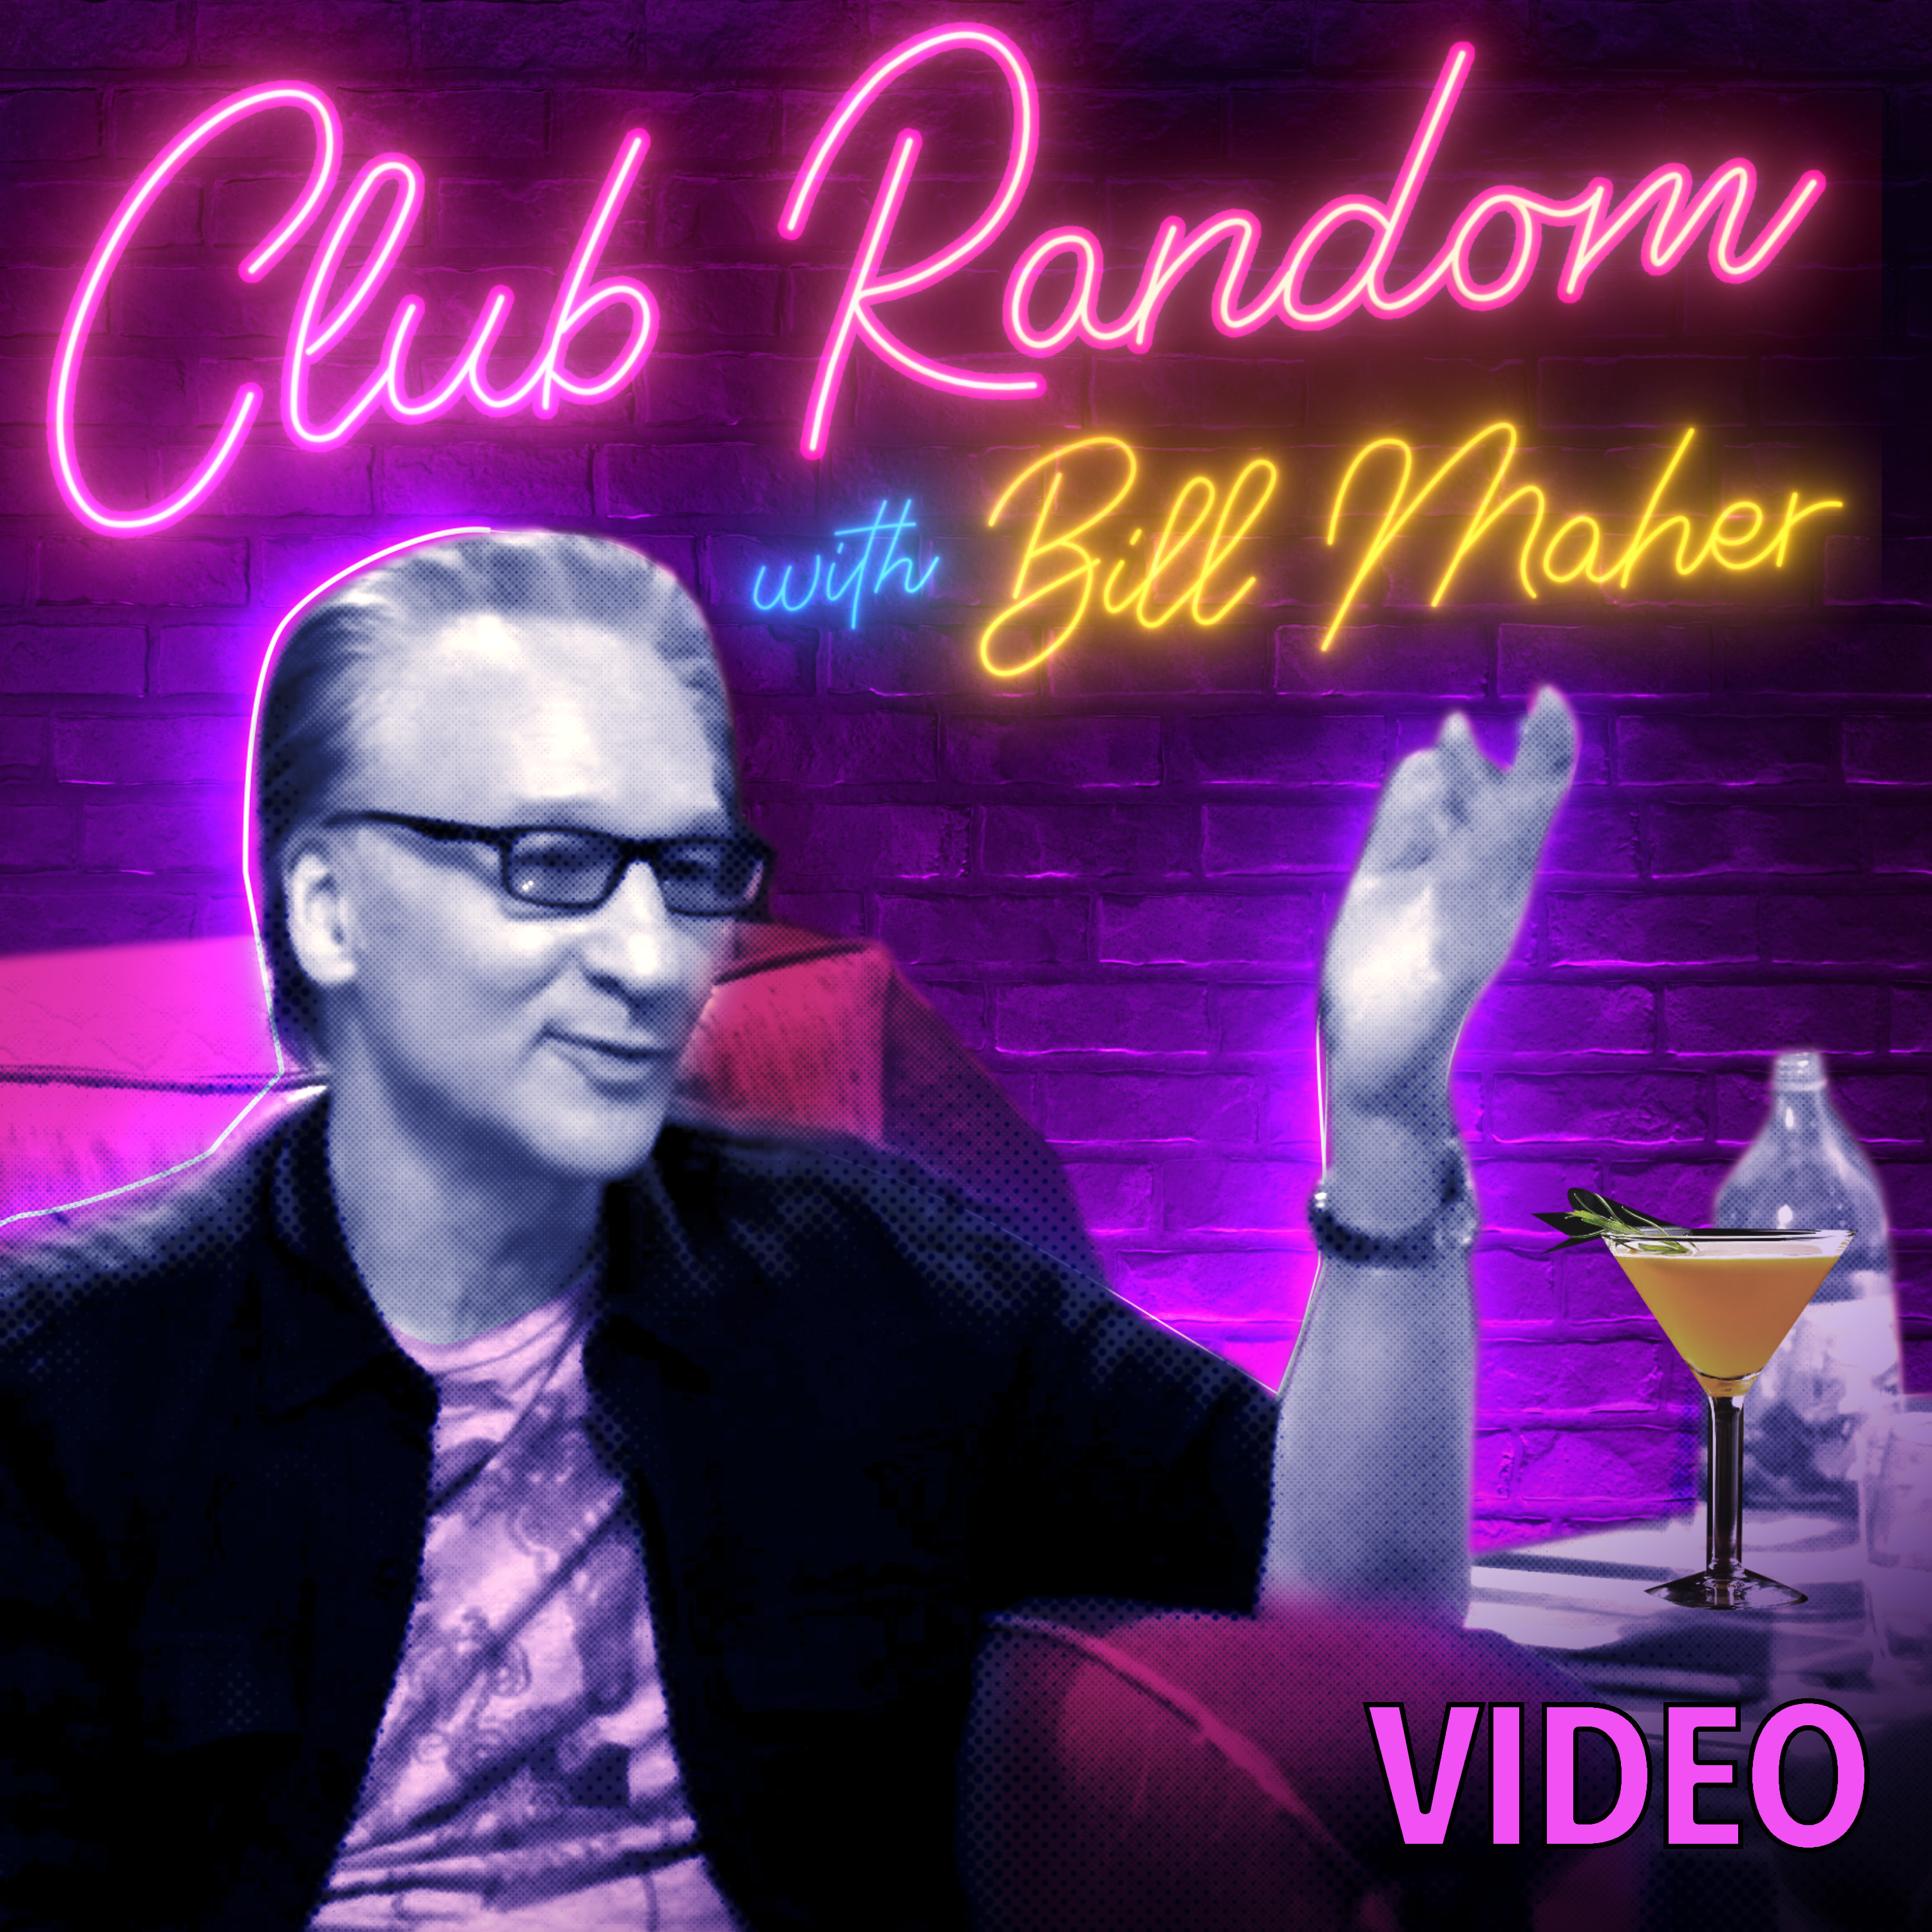 Video: Matt Friend | Club Random with Bill Maher